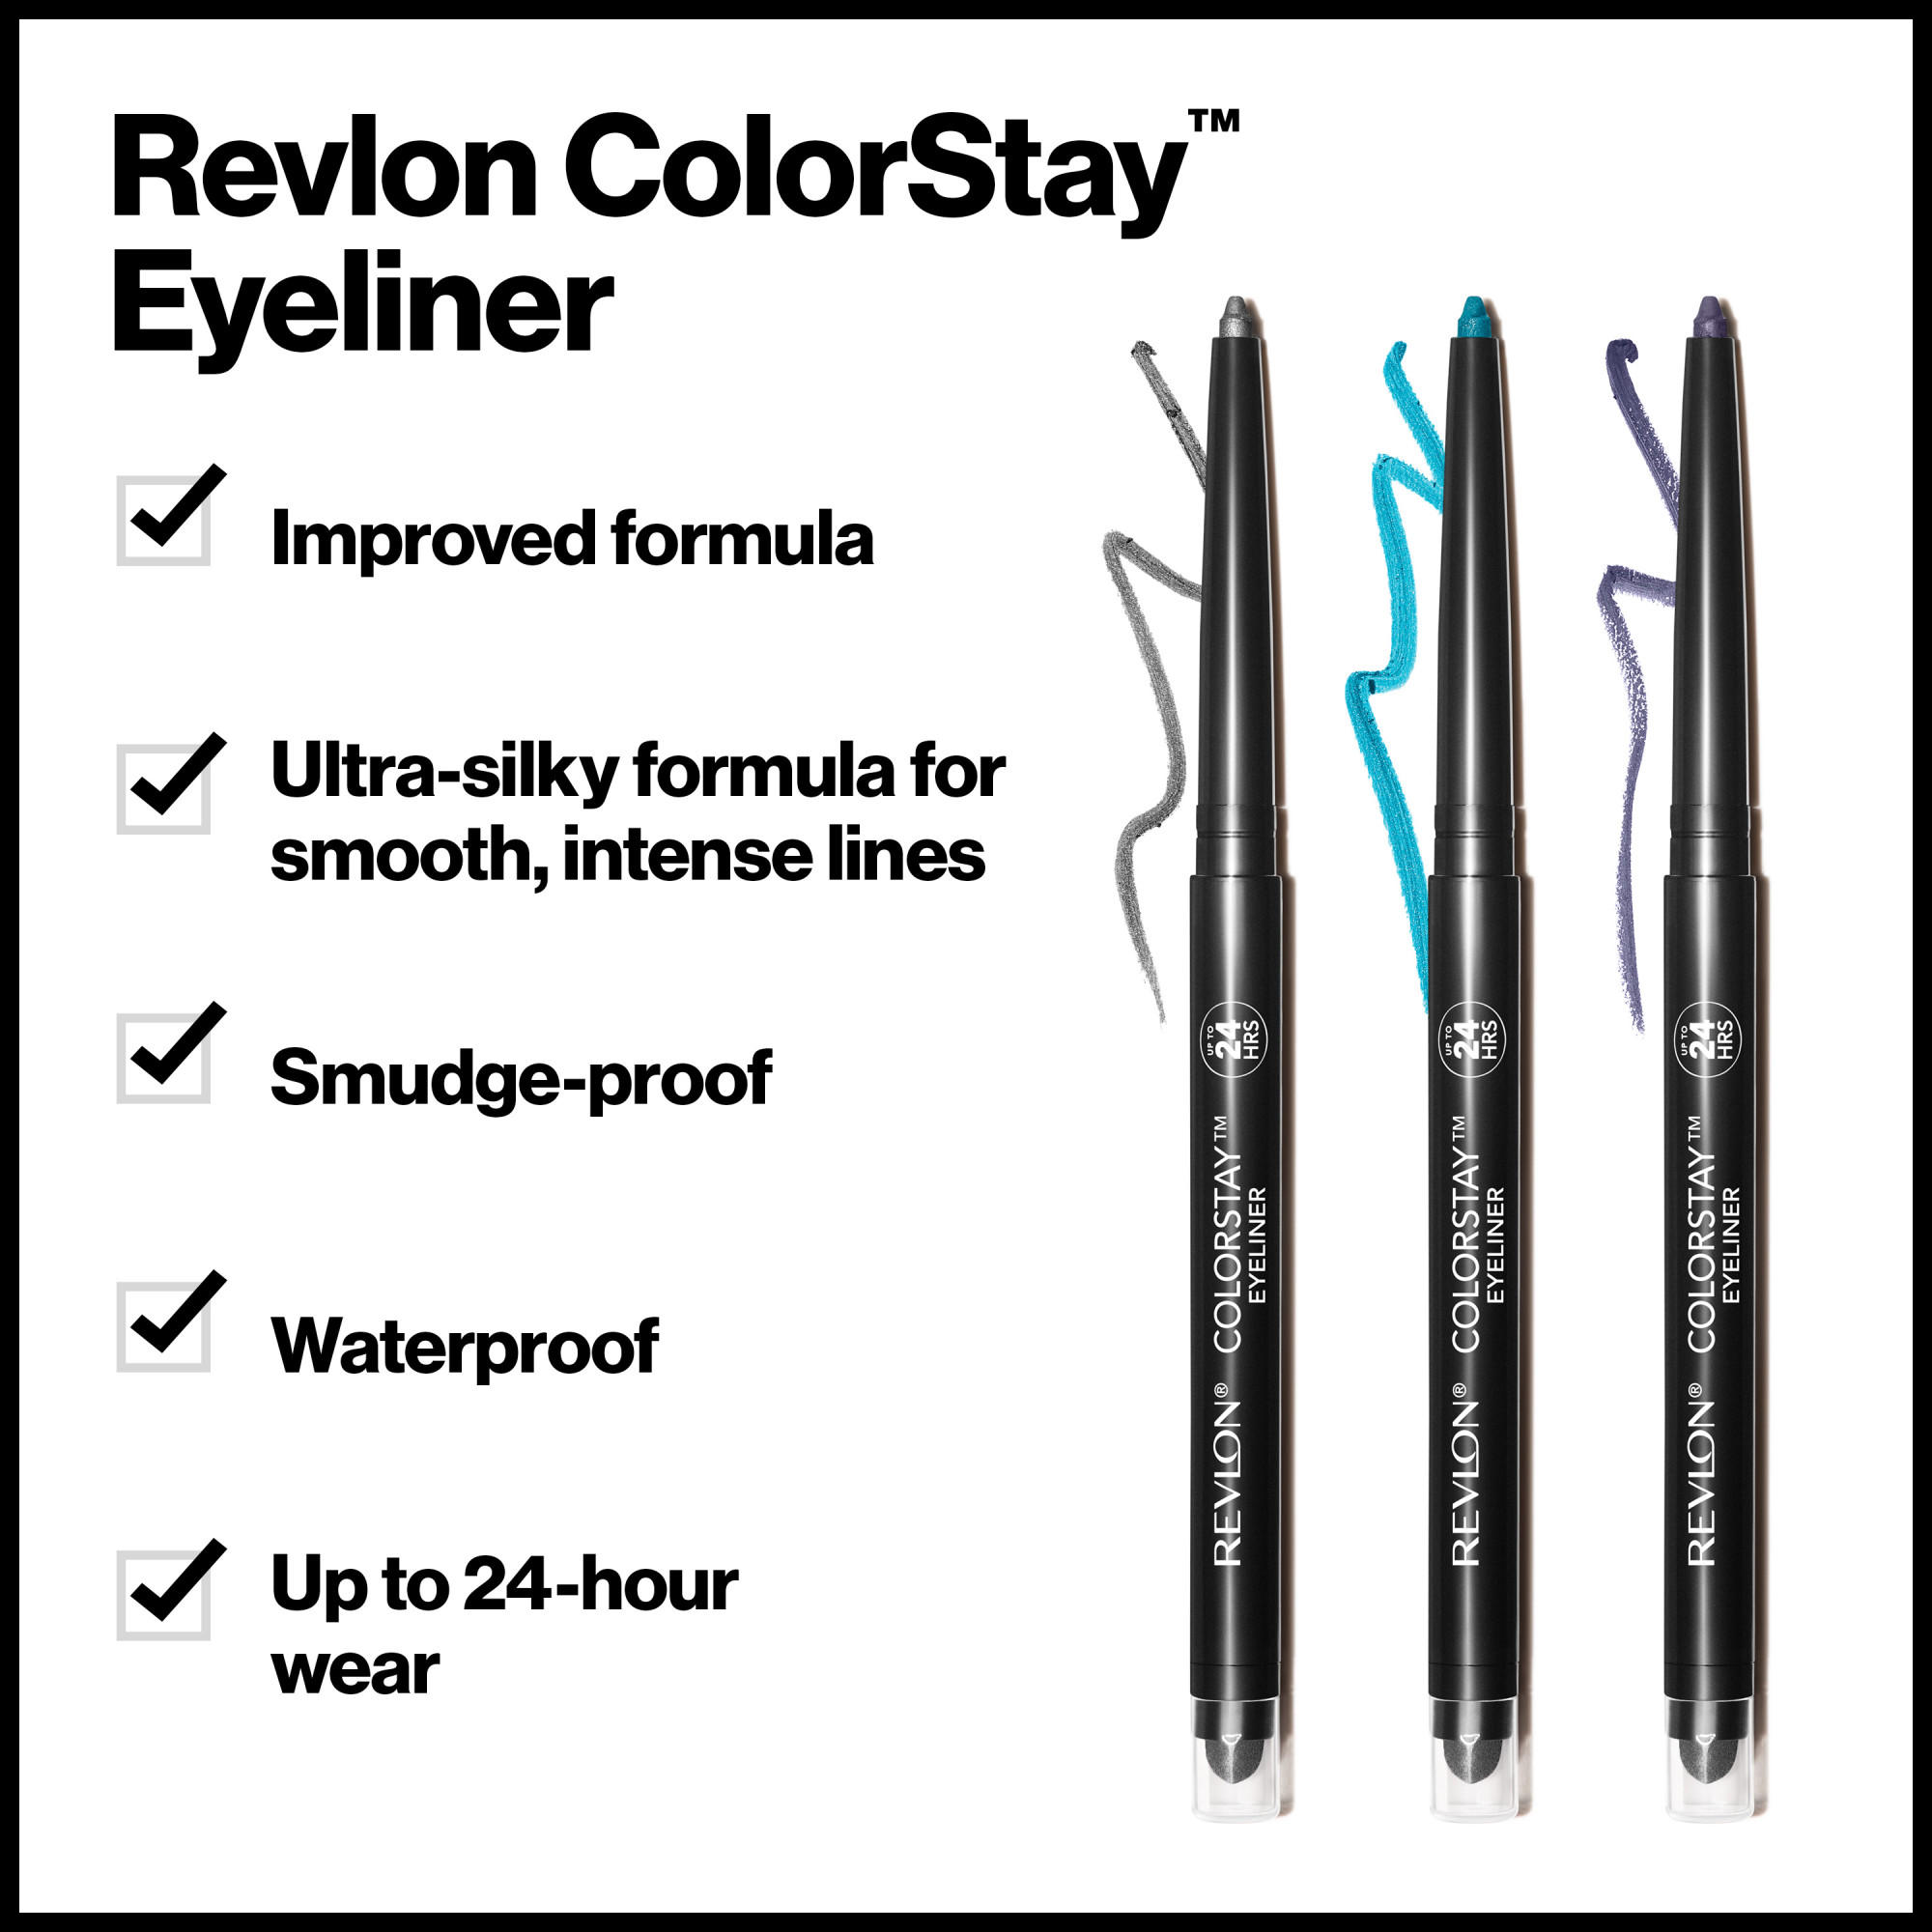 Revlon ColorStay Waterproof Eyeliner Pencil, 24HR Wear, Built-in Sharpener, 206 Jade, 0.01 oz - image 5 of 9